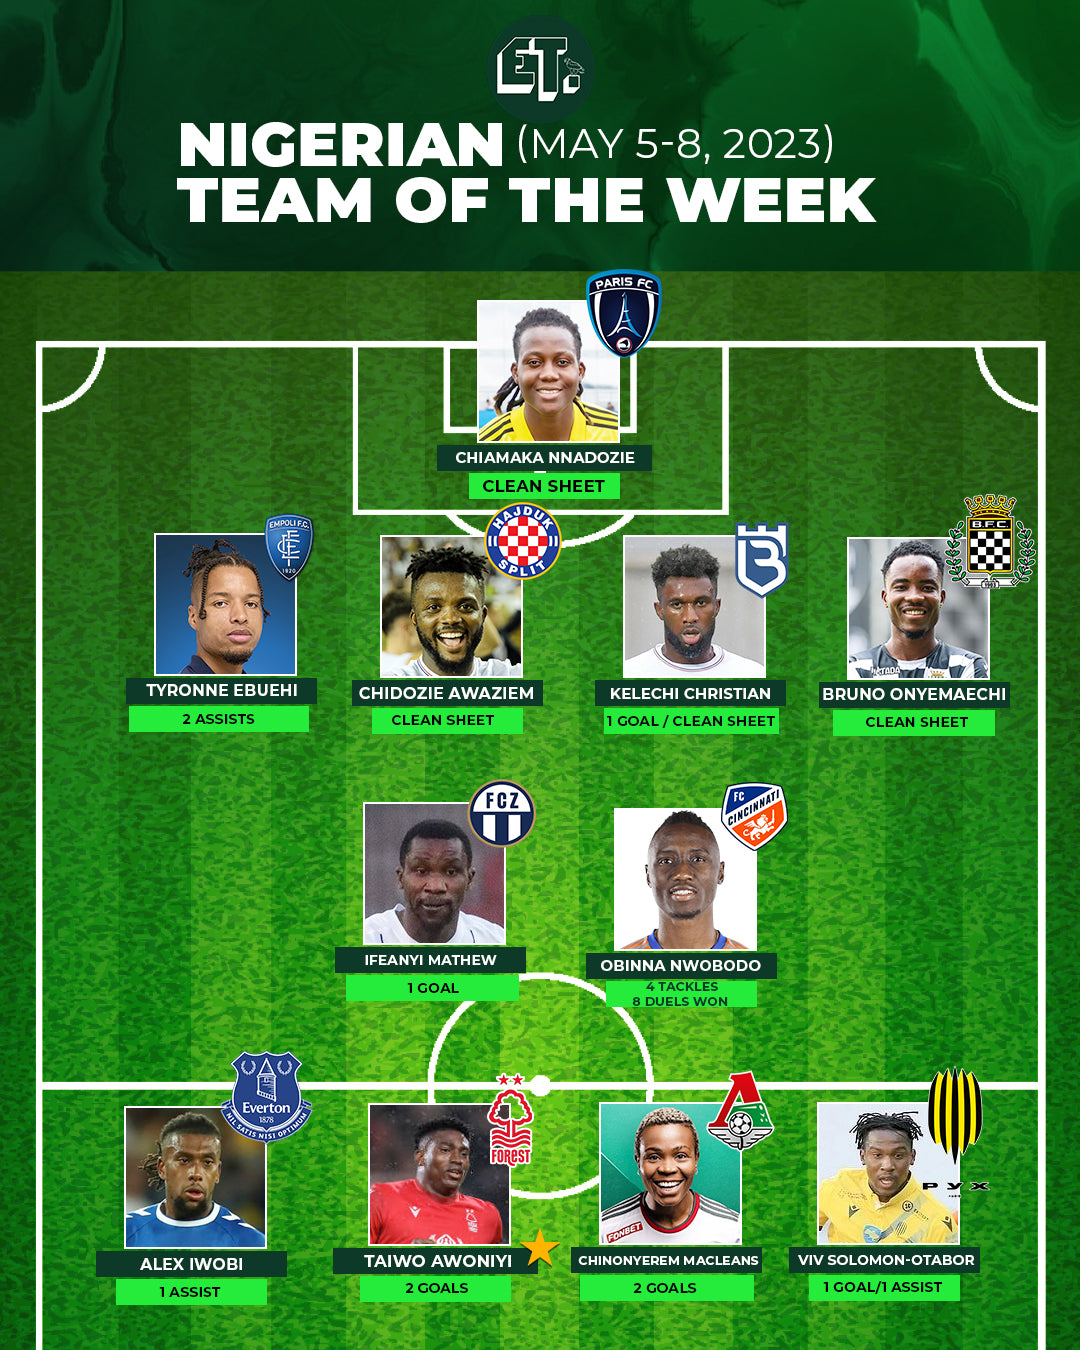 Nigerian Team of the Week - May 5-8, 2023